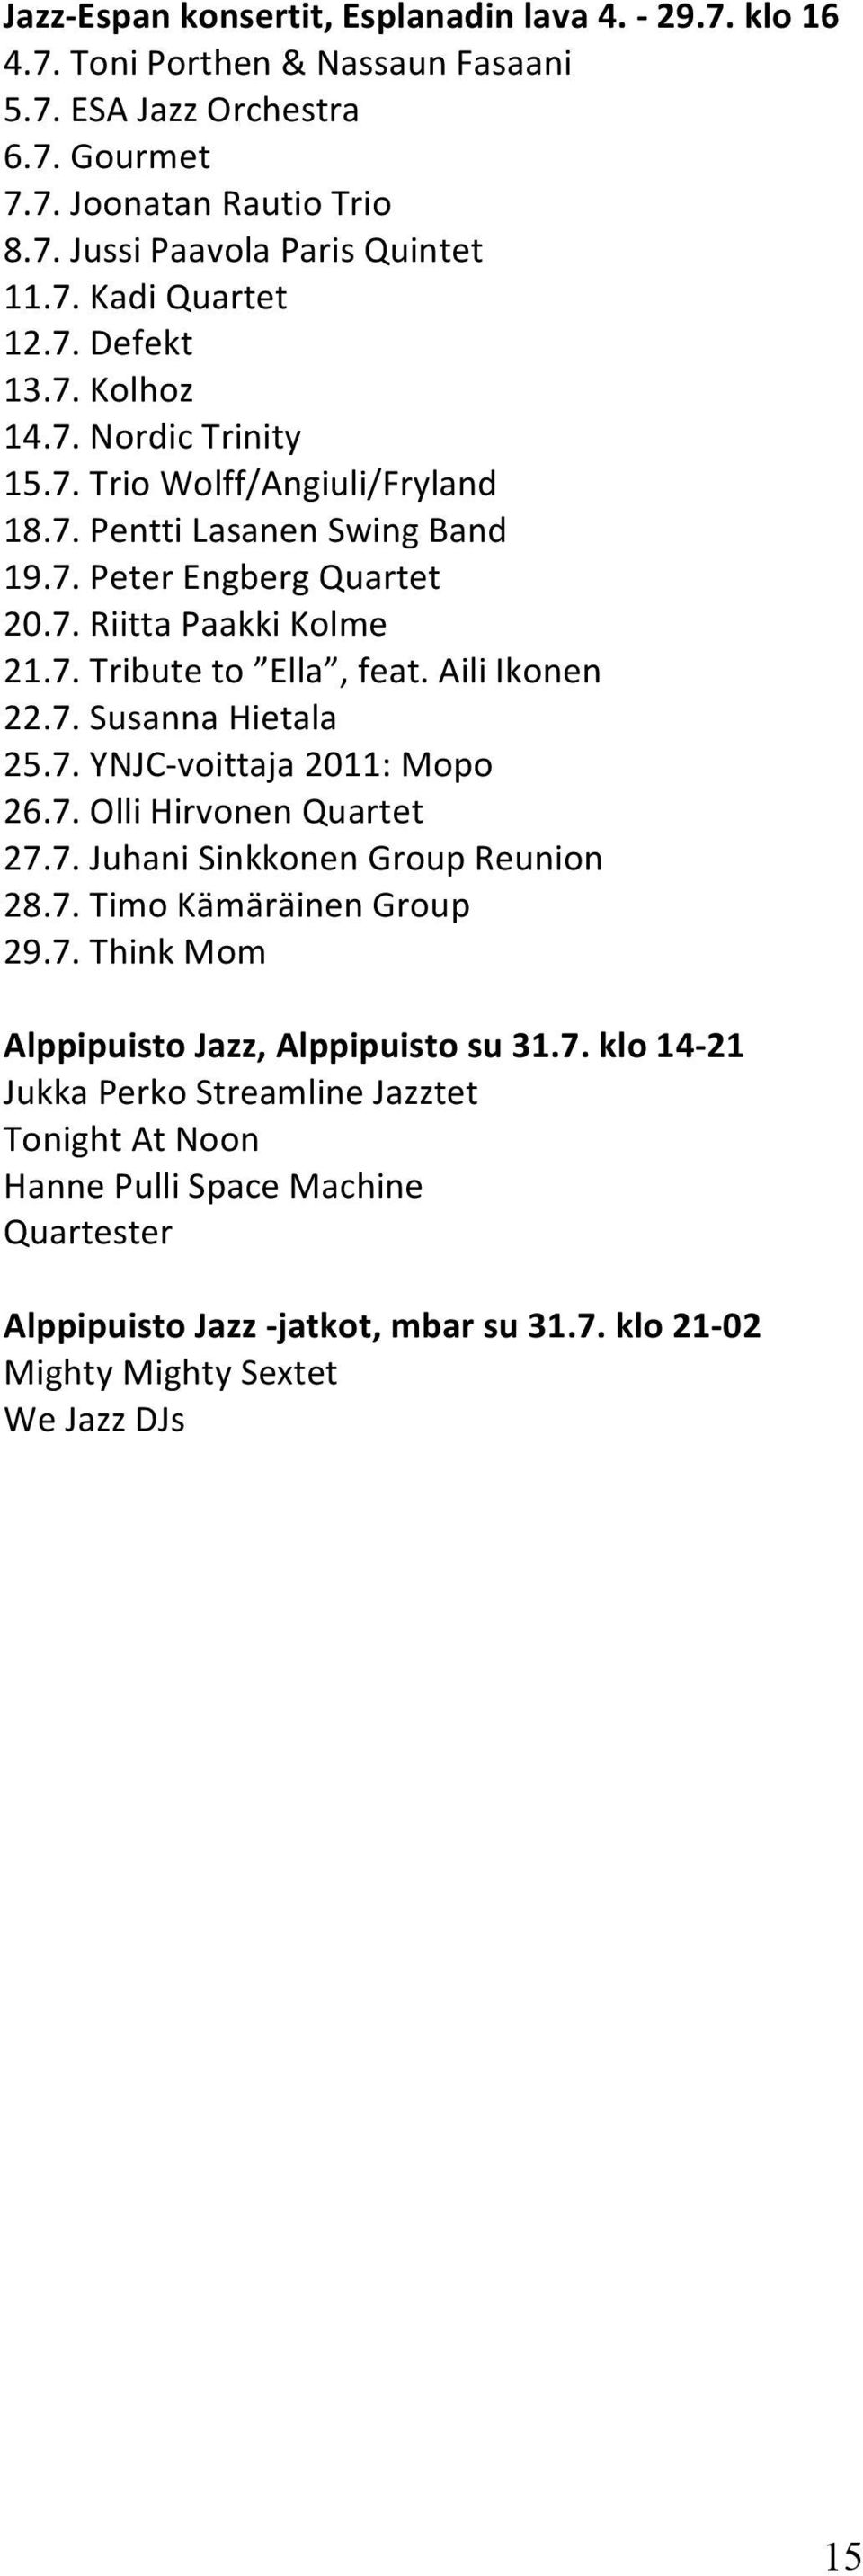 Aili Ikonen 22.7. Susanna Hietala 25.7. YNJC- voittaja 2011: Mopo 26.7. Olli Hirvonen Quartet 27.7. Juhani Sinkkonen Group Reunion 28.7. Timo Kämäräinen Group 29.7. Think Mom Alppipuisto Jazz, Alppipuisto su 31.